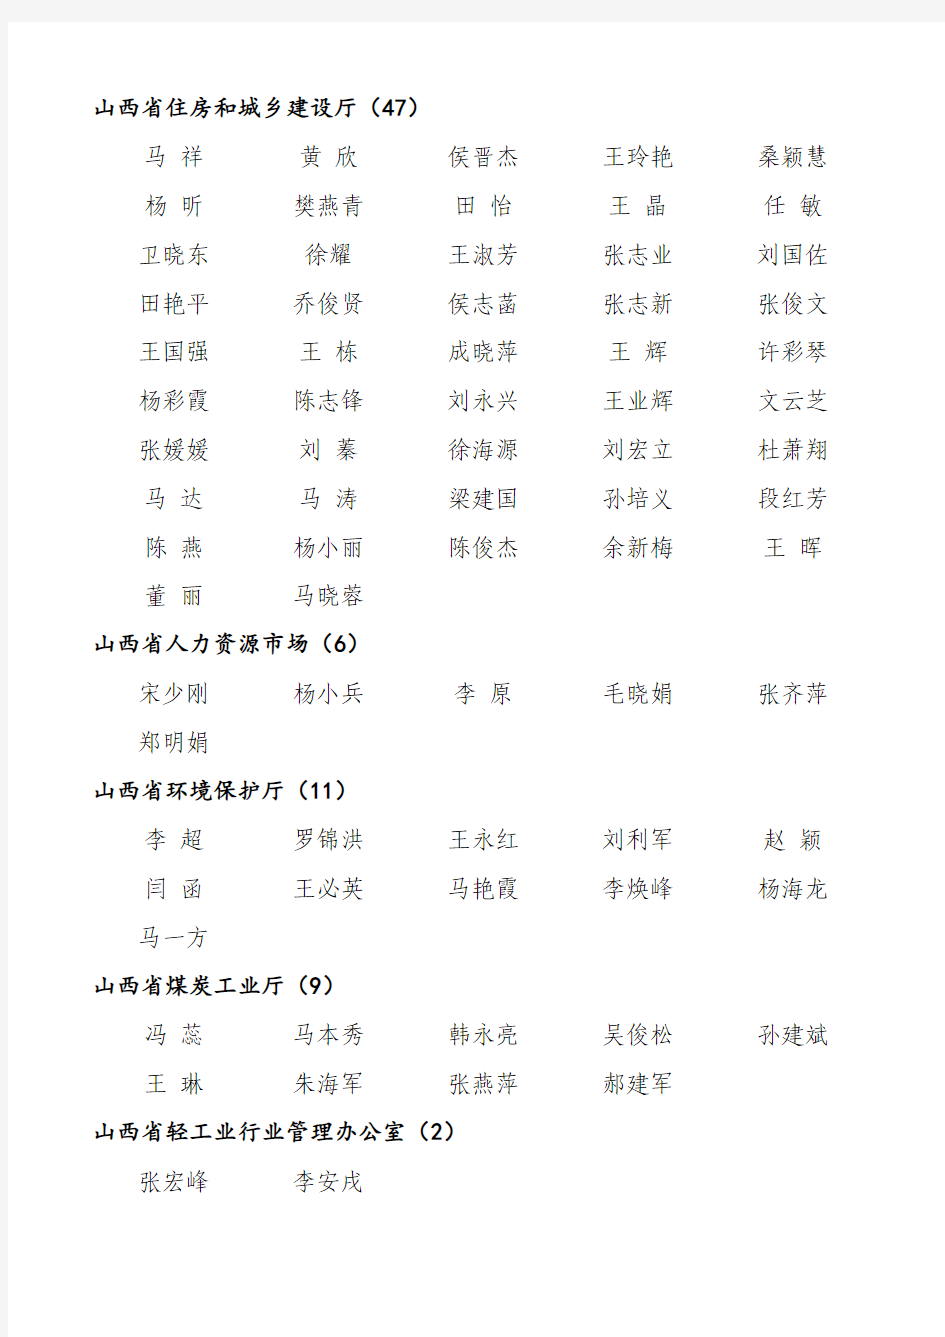 2015年高工公示人员名单(430人) (1)